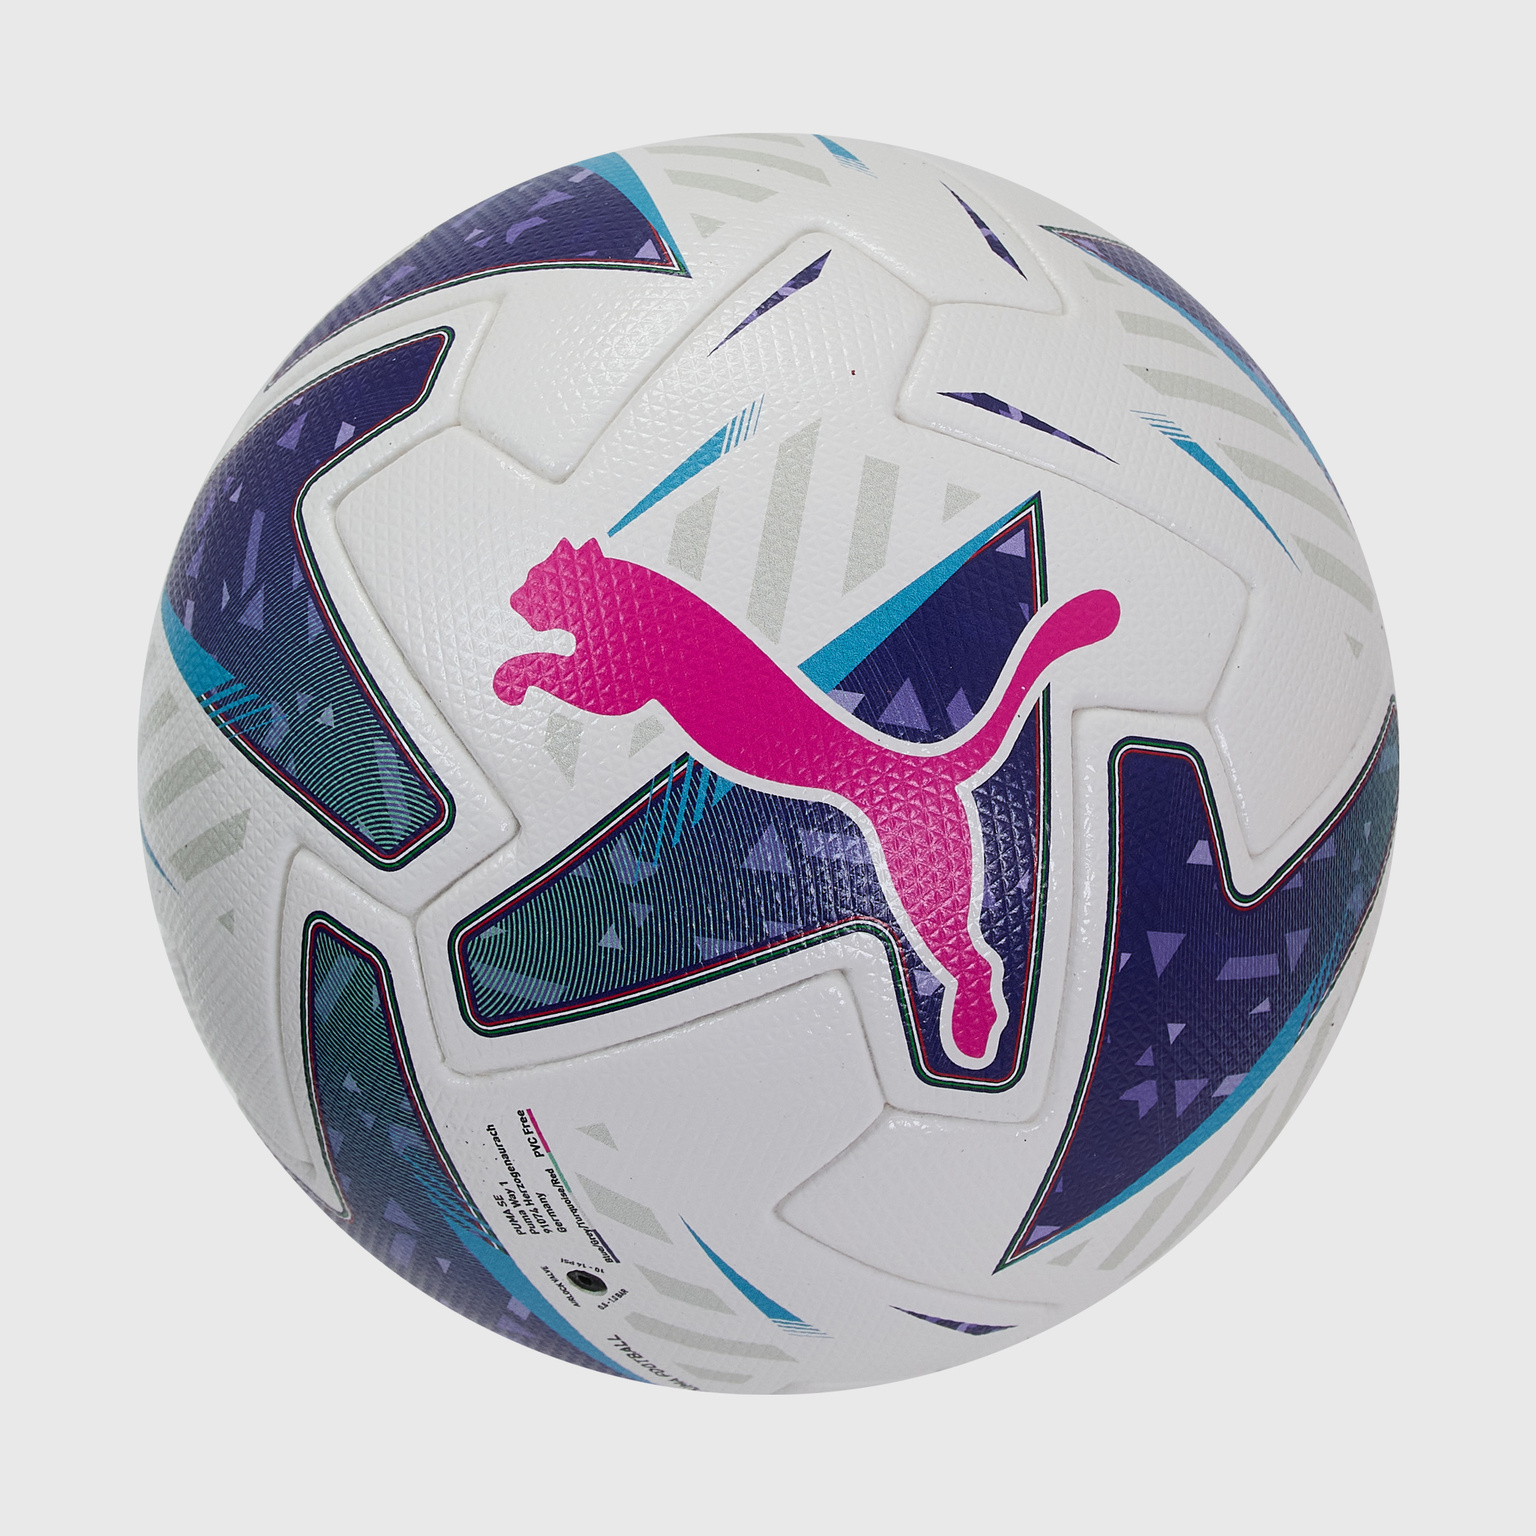 Футбольный мяч Puma Orbita Serie A 08399901